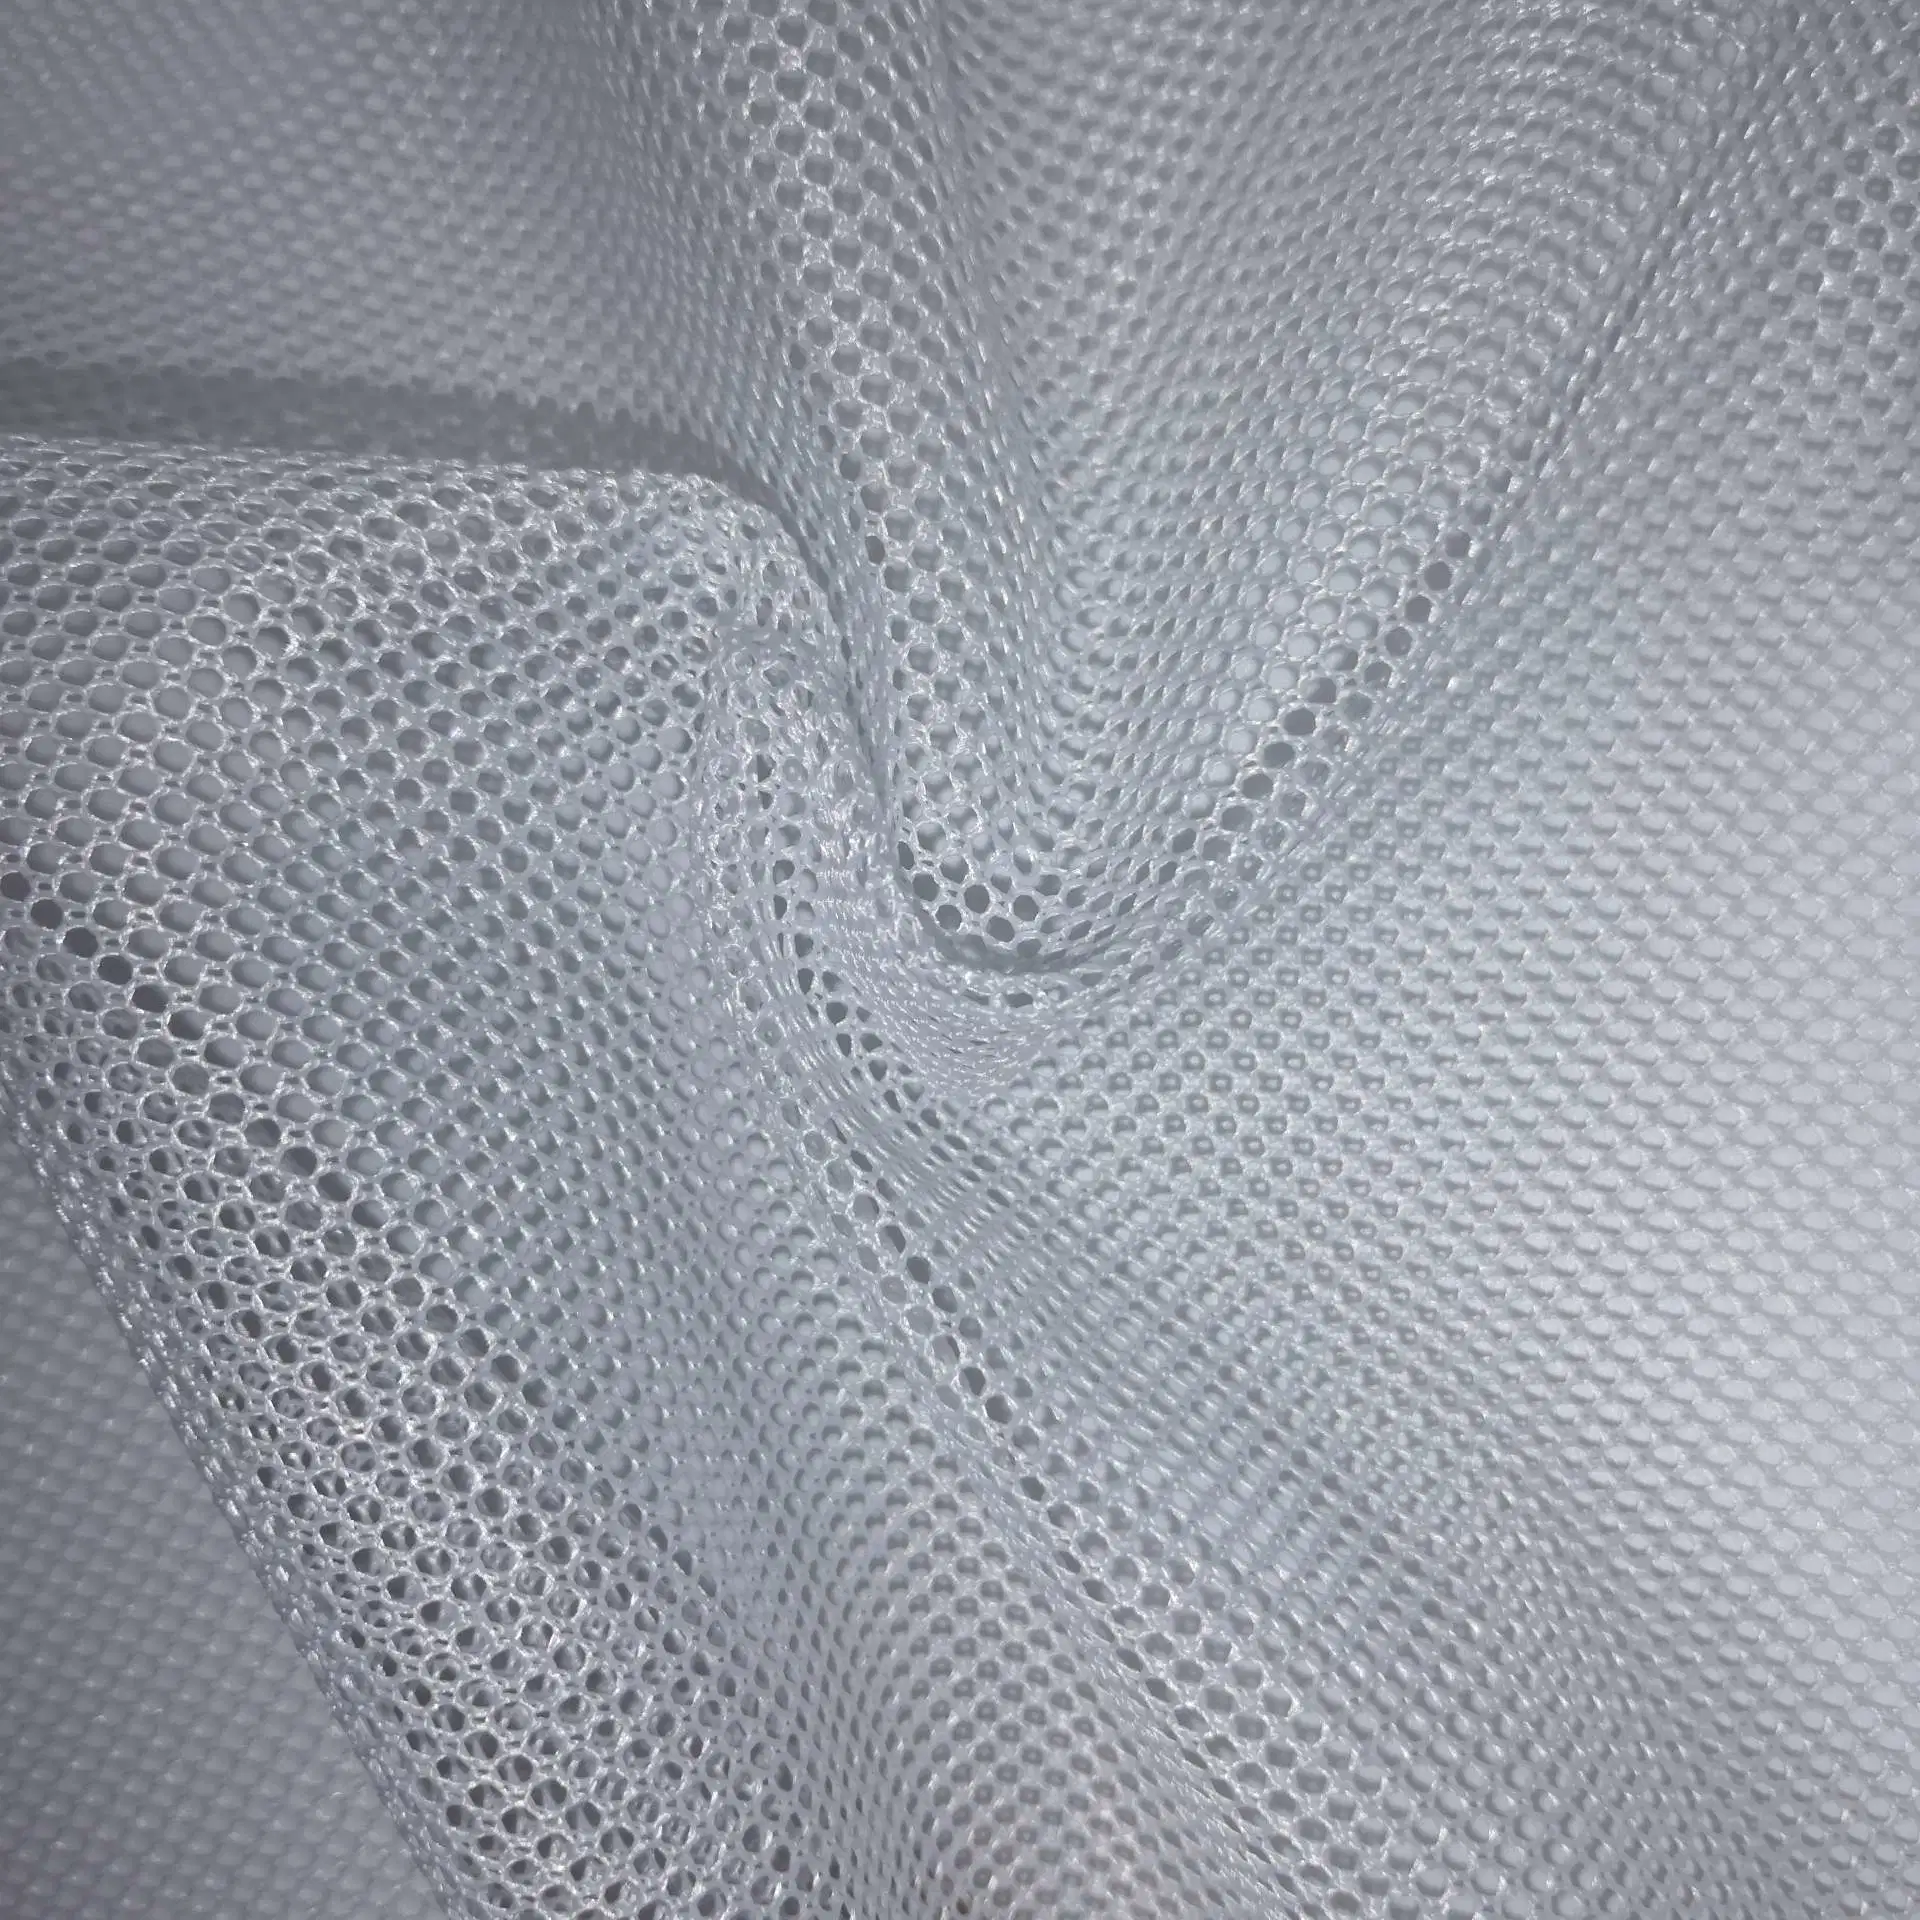 Мягкий и Wearproof сетчатый материал из 100% полиэстера Net/Mesh трикотажные одежды/Крышка кузова ткань для внутренней панели боковины